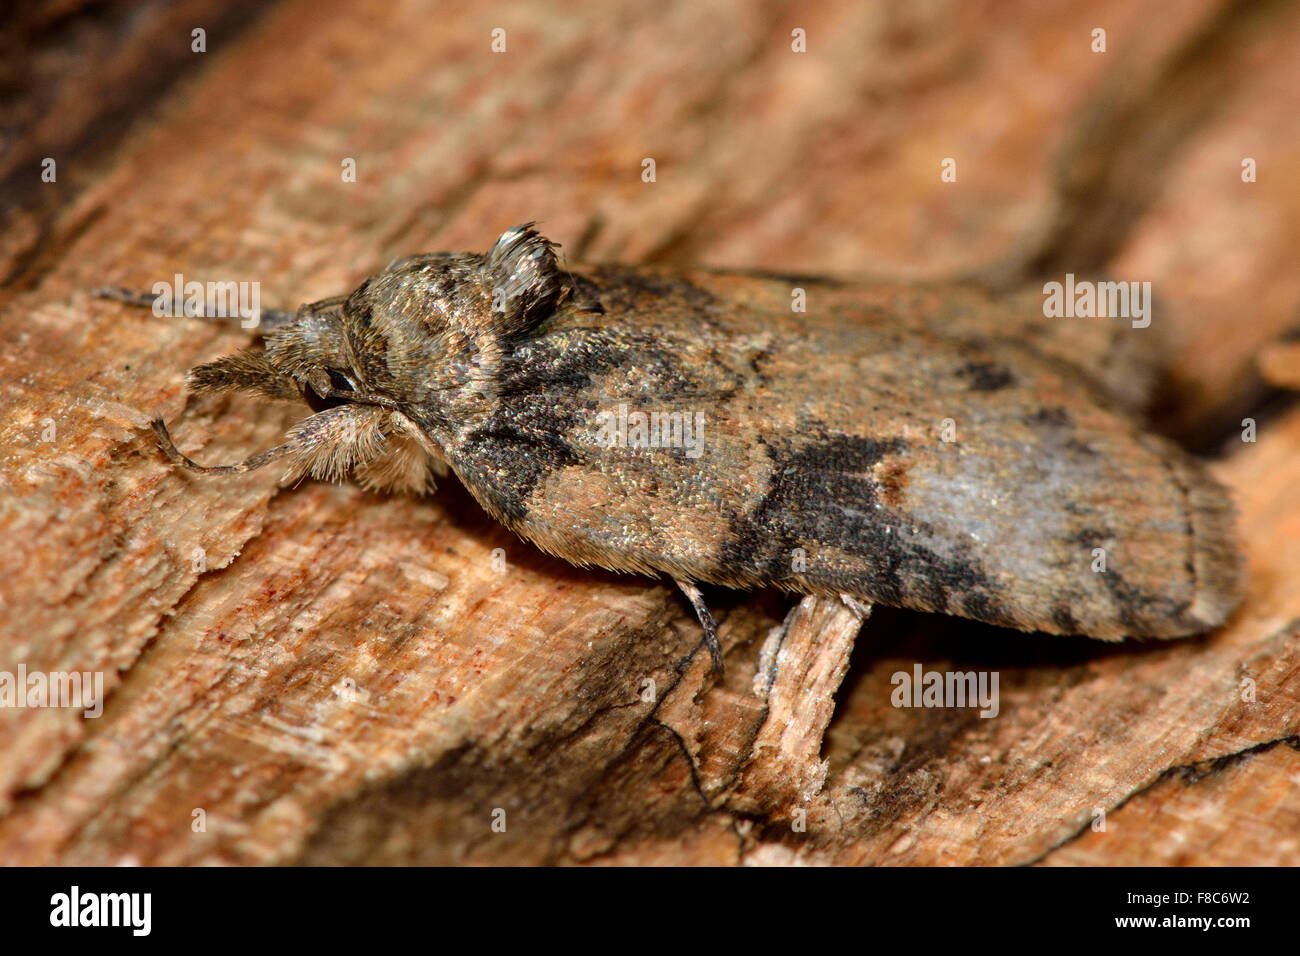 Oak nycteoline moth (Nycteola revayana) Stock Photo